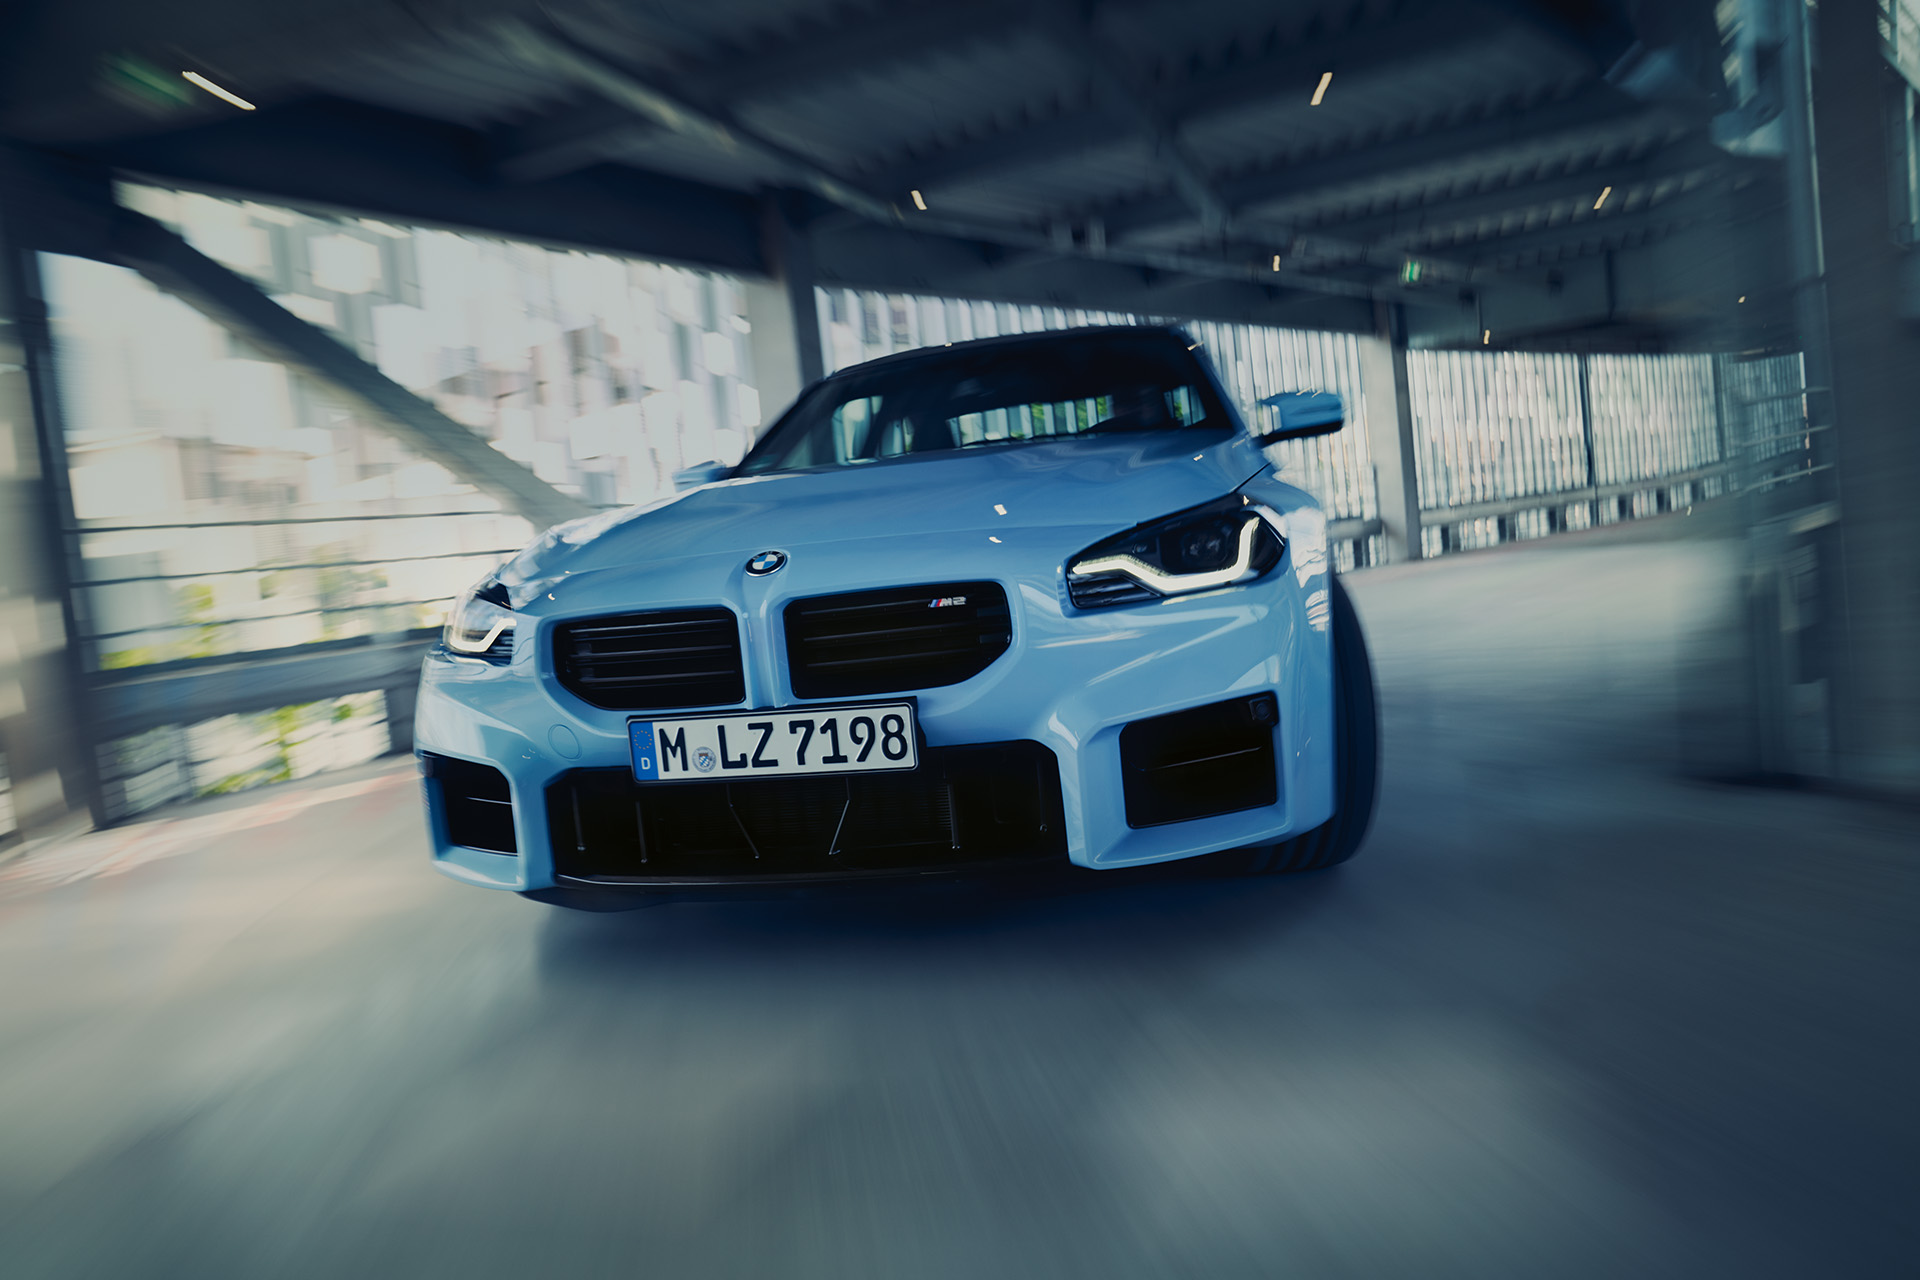 Sitzheizung im neuen BMW? Macht 18 Euro pro Monat